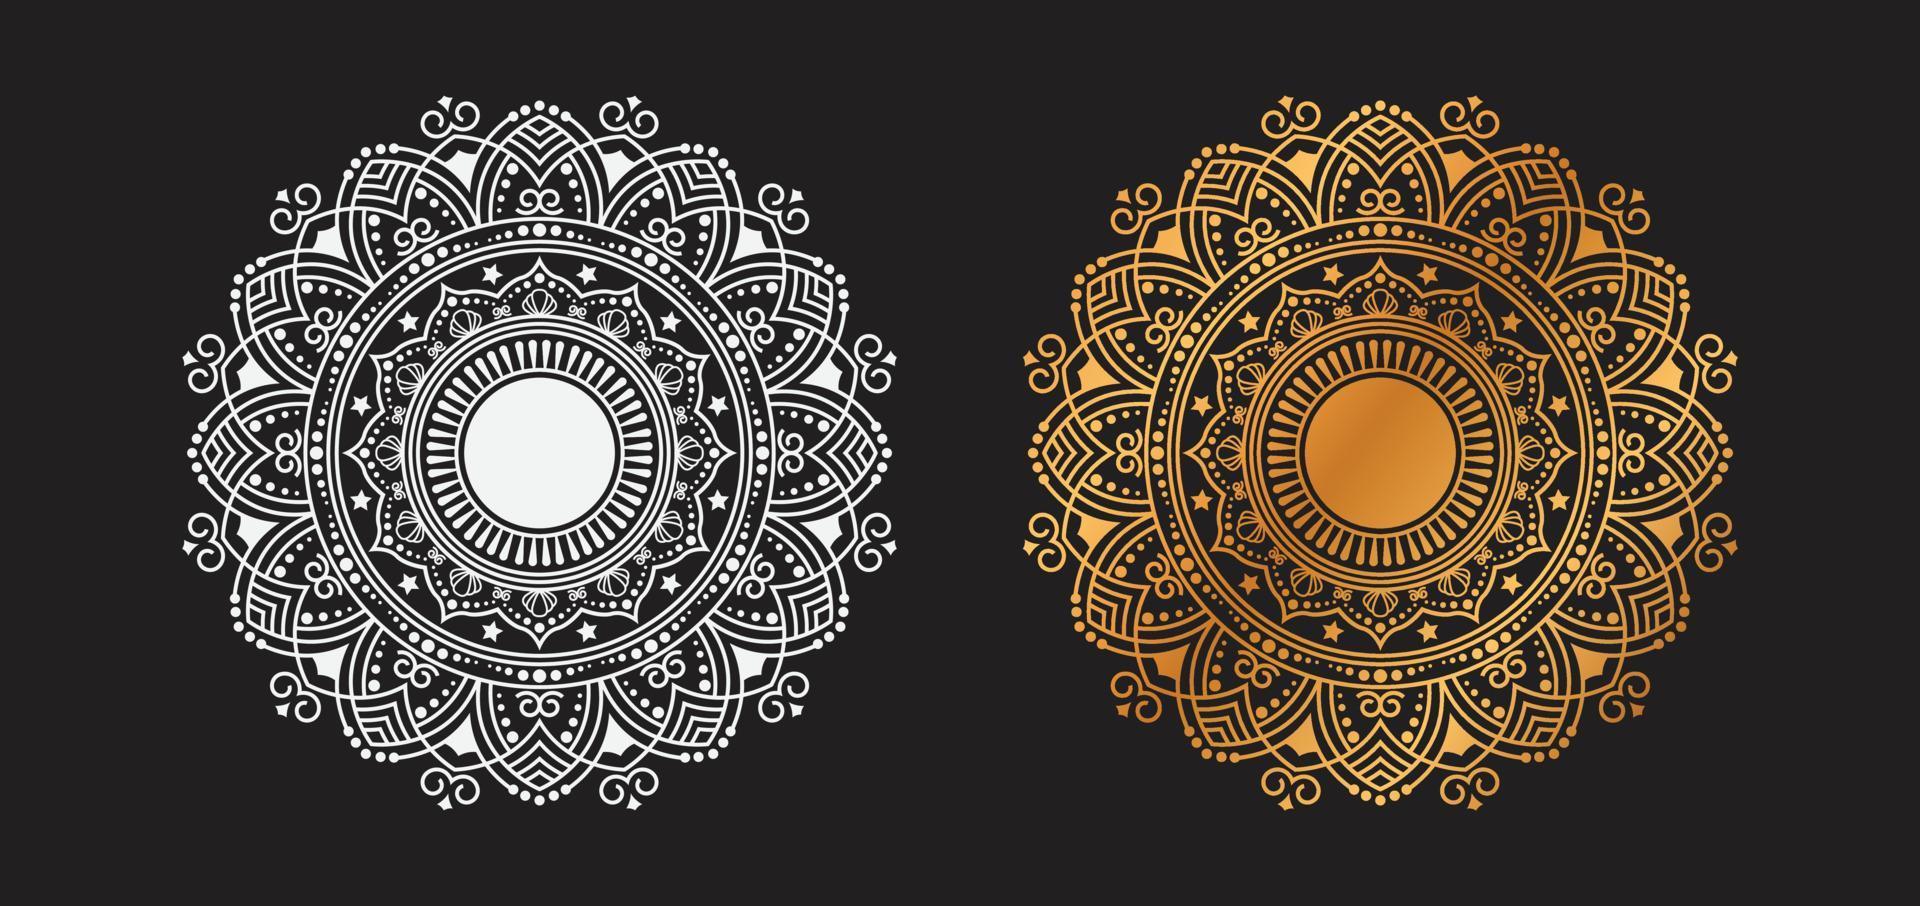 conception de vecteur de fond de mandala ornemental doré de luxe. mandala décoratif pour tatouage, mehndi, motif islamique, ornement, art, henné, motif indien, impression, affiche, couverture, brochure, dépliant, bannière